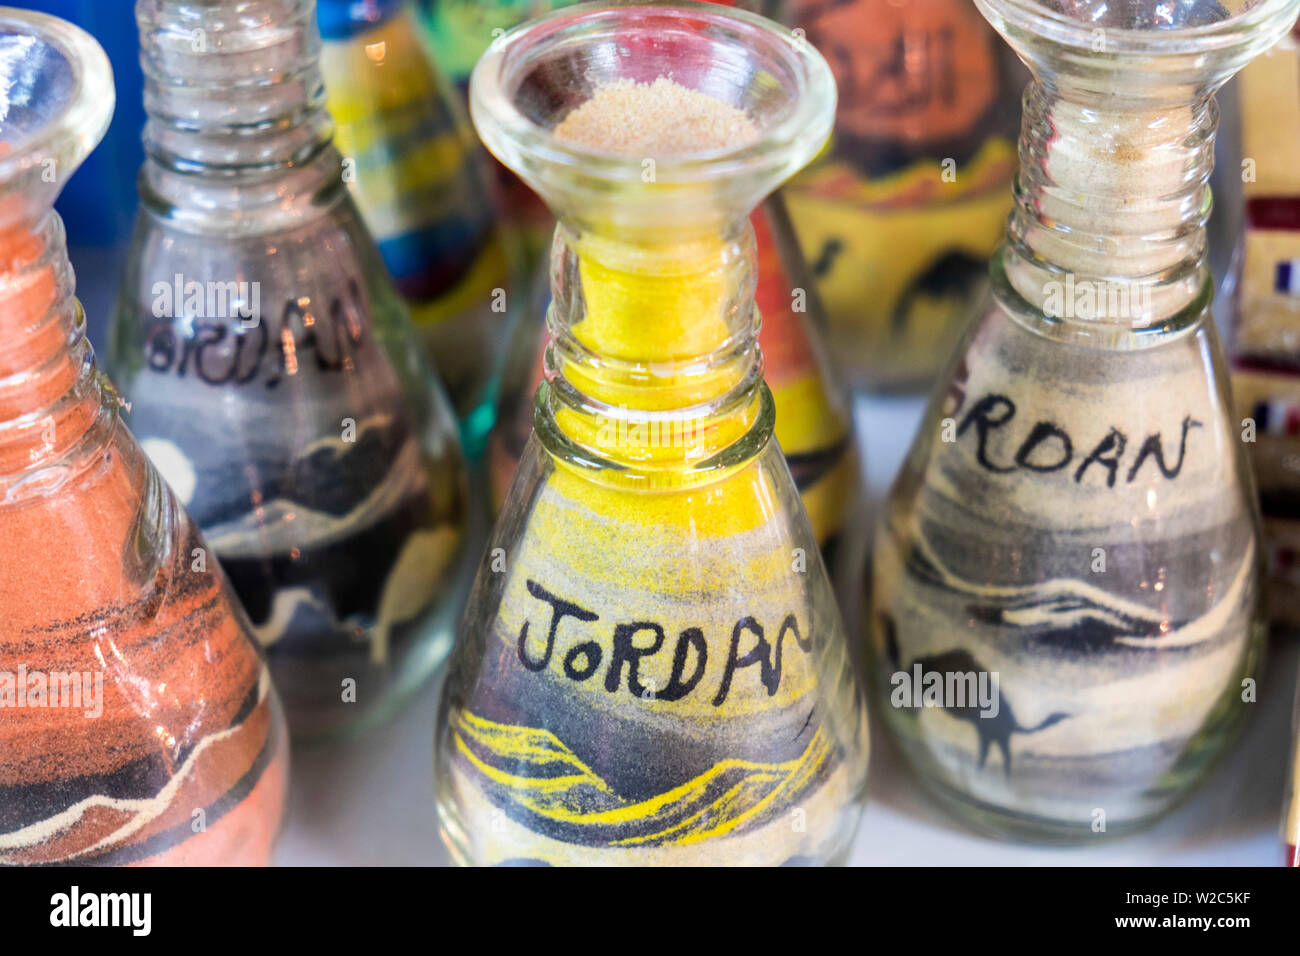 Jordan sand art in bottles, Jordan Stock Photo